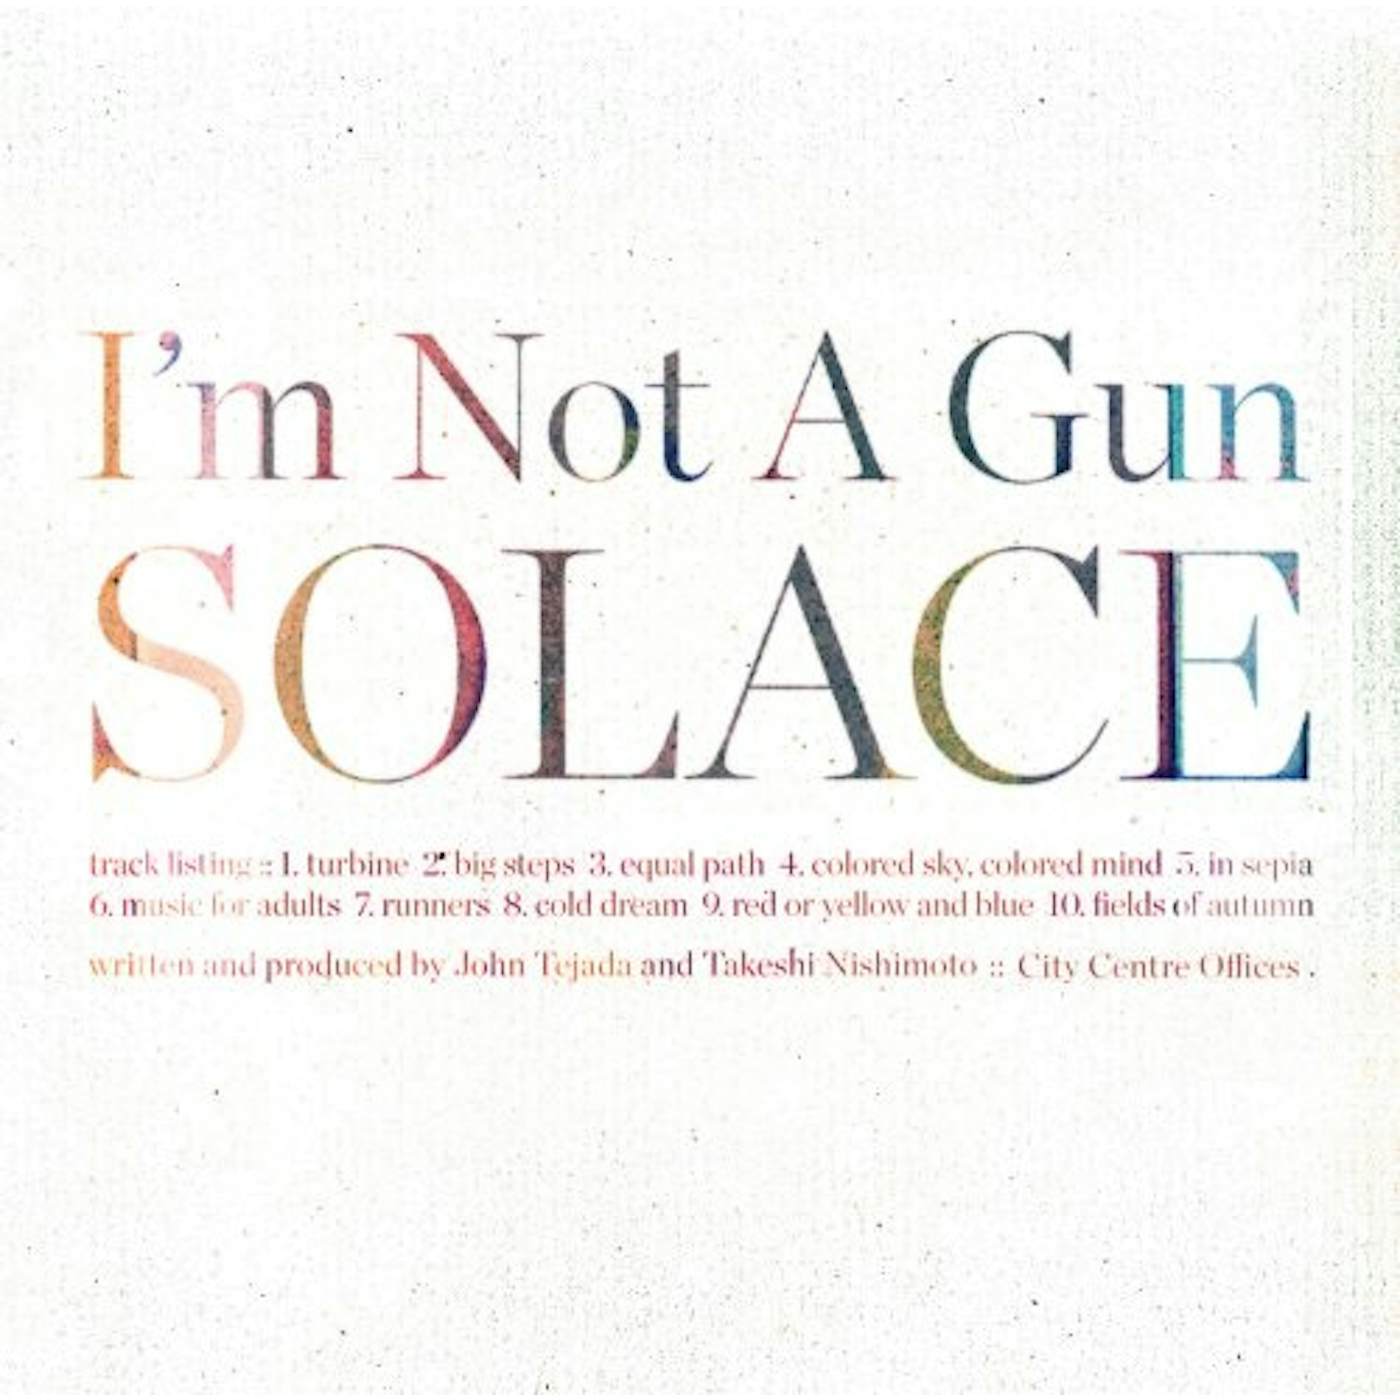 I'm Not A Gun SOLACE CD